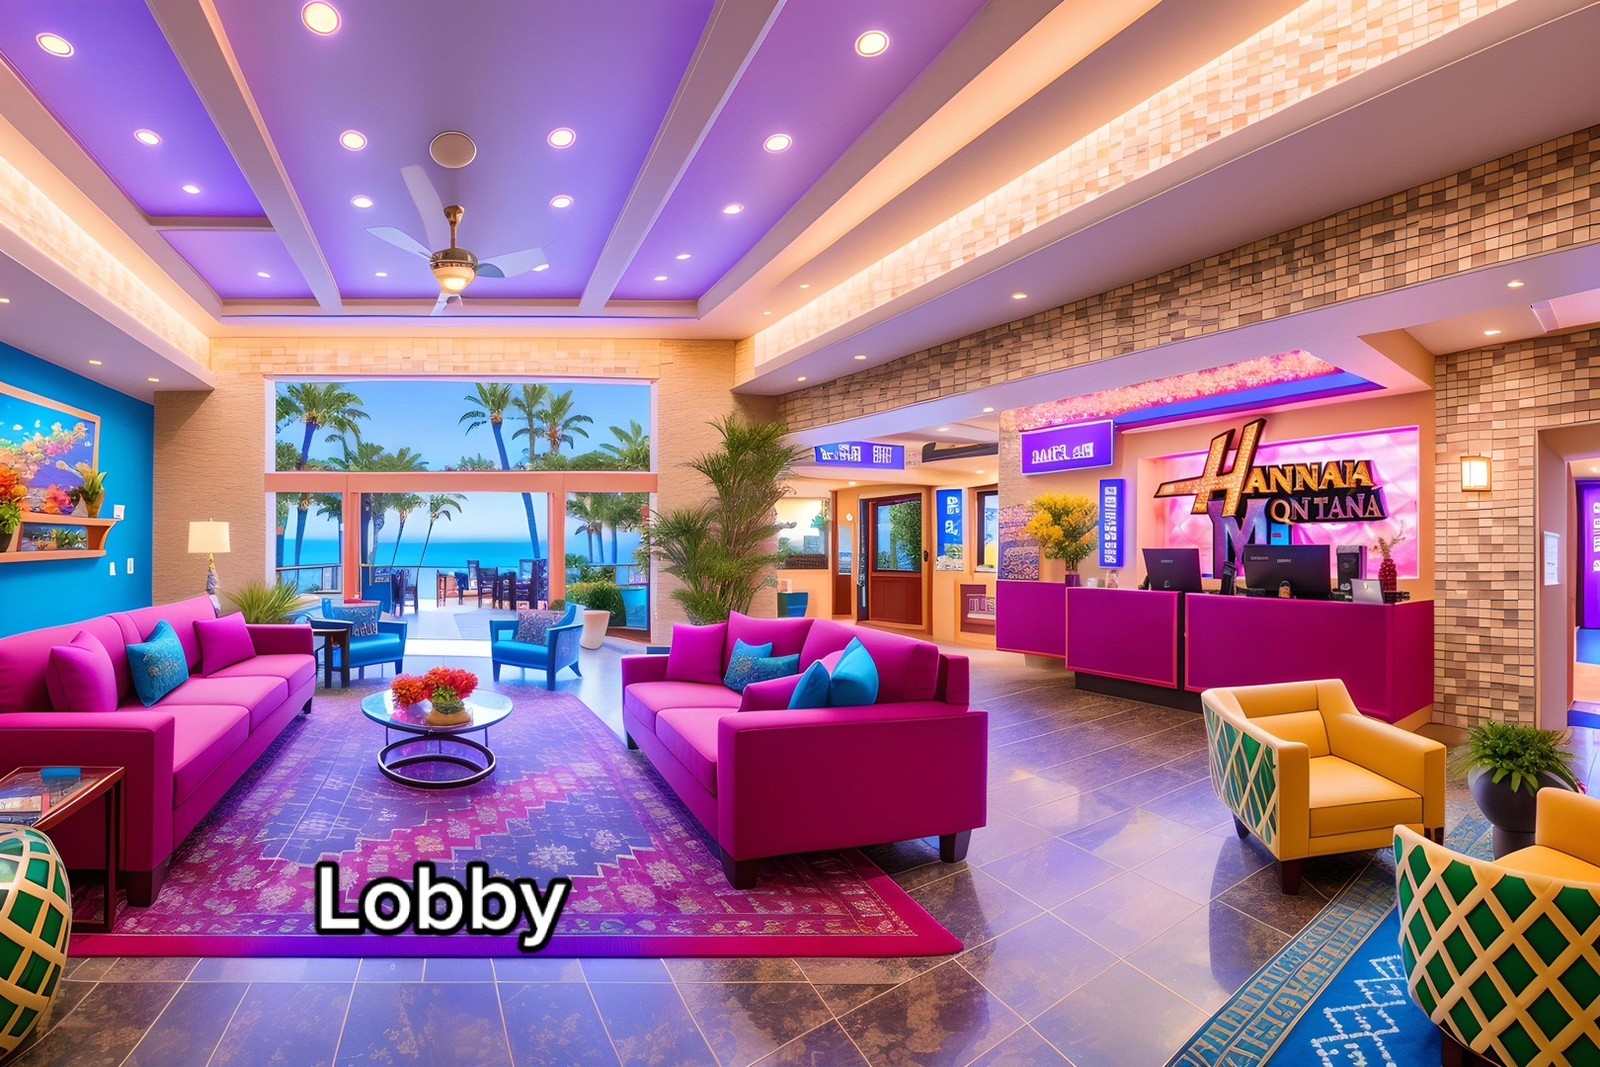 Lobby do resort inspirado em Hannah Montana — Foto: aipresence / TikTok / Reprodução